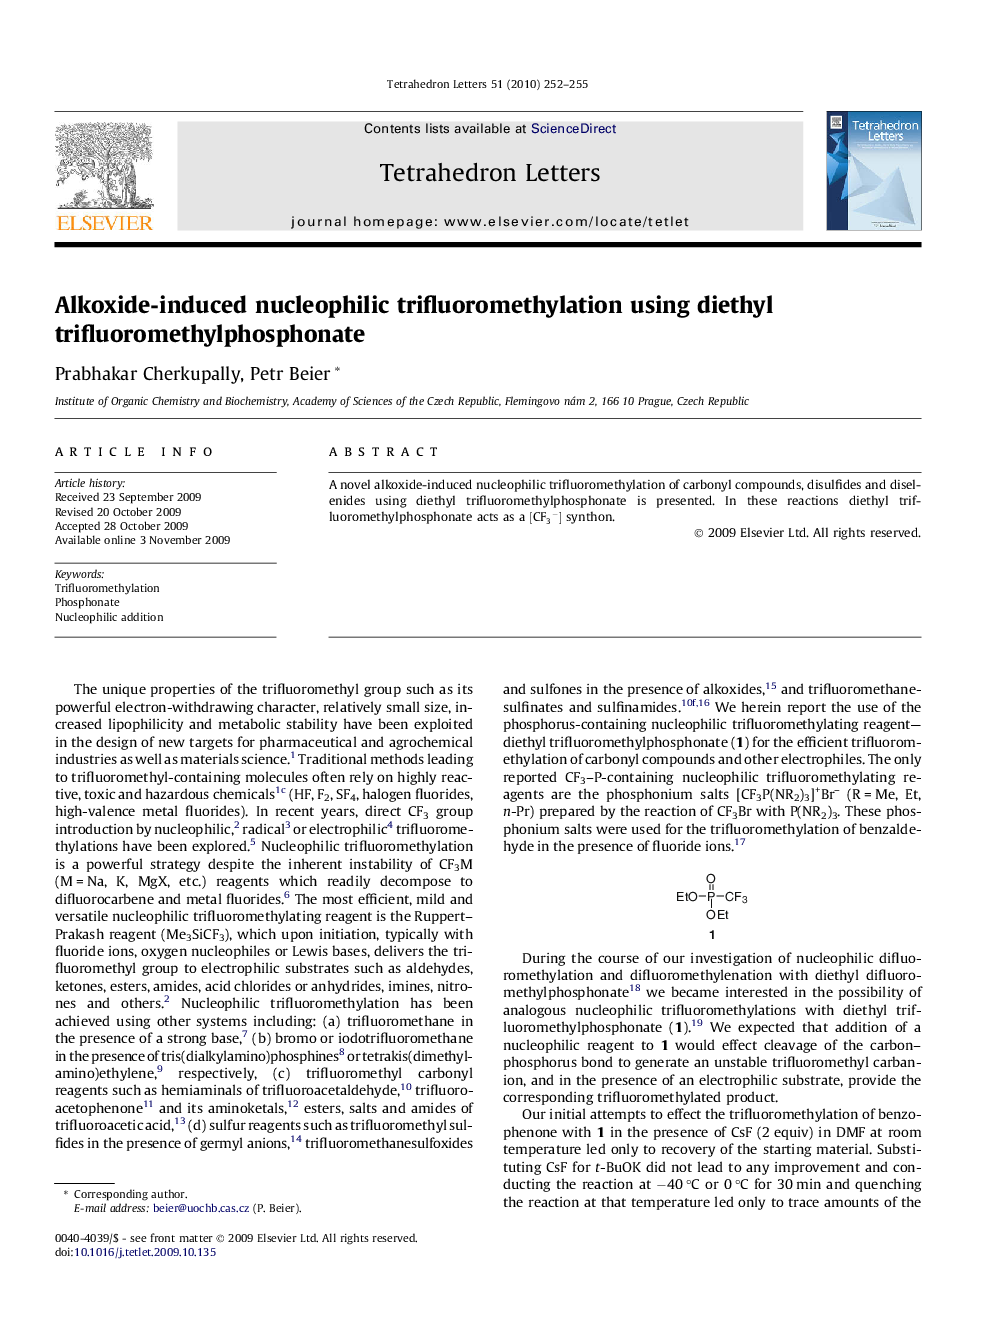 Alkoxide-induced nucleophilic trifluoromethylation using diethyl trifluoromethylphosphonate